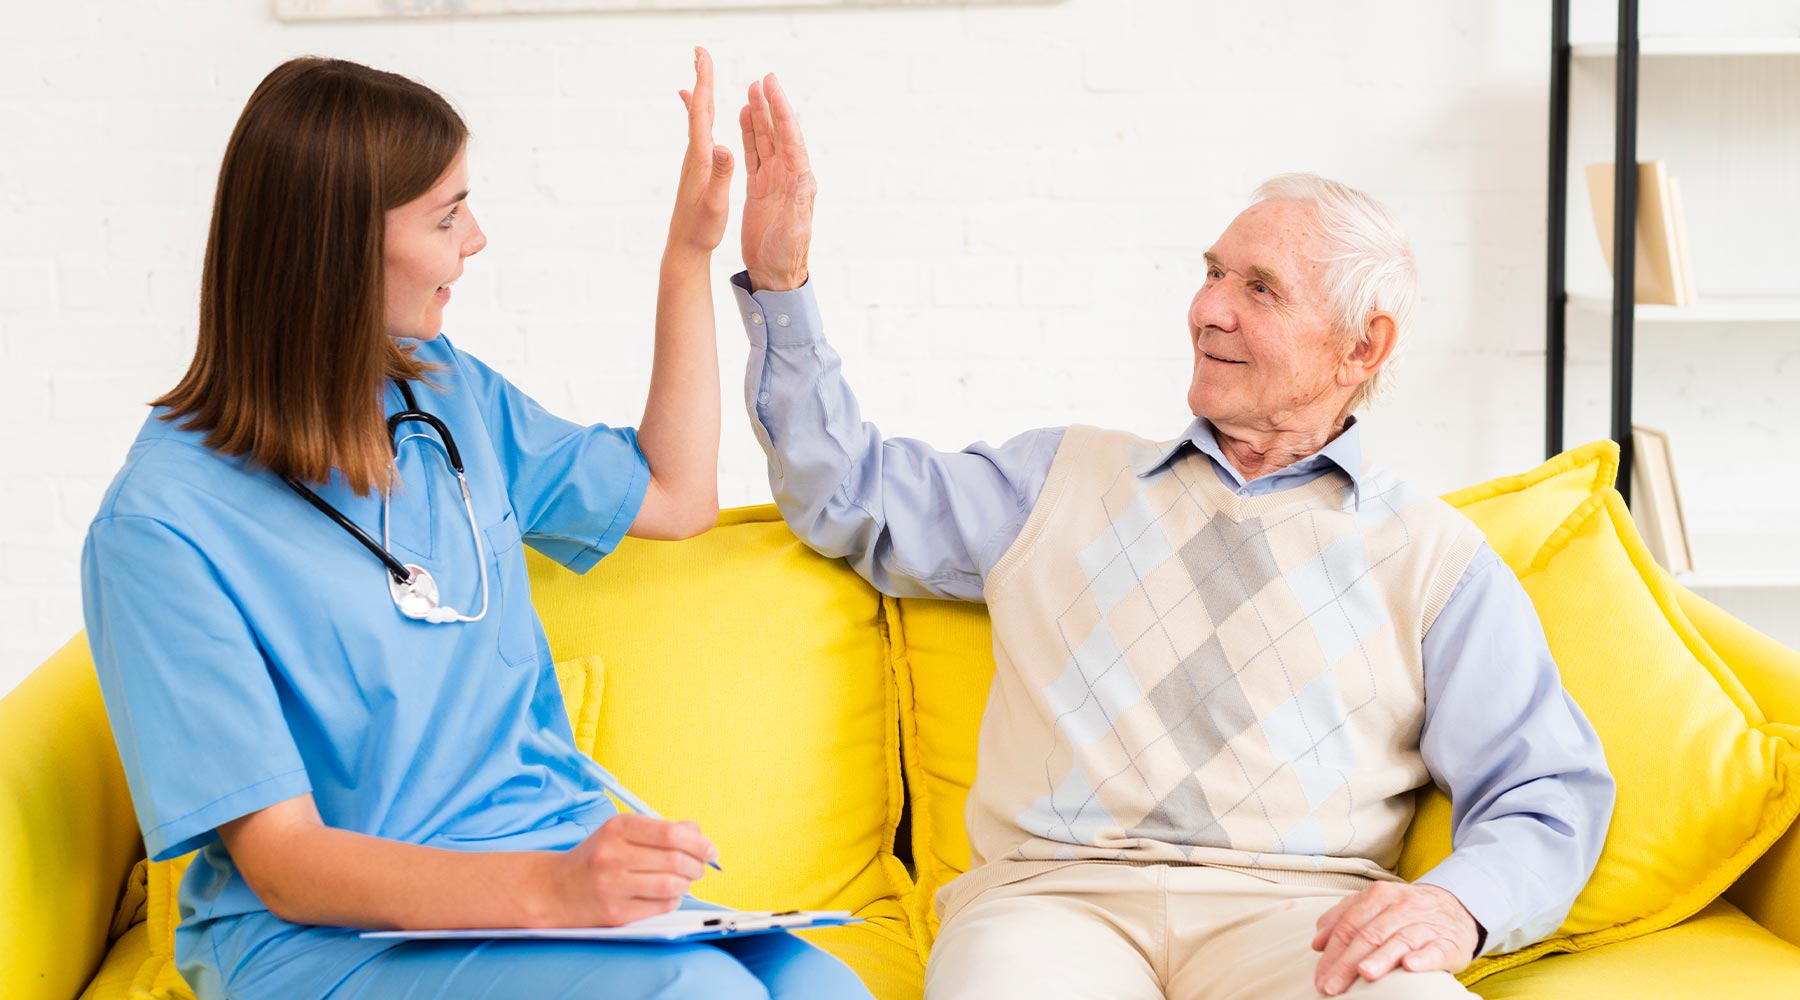 La atención sociosanitaria a personas en el domicilio hace referencia al cuidado de personas mayores por horas o internas en el domicilio del anciano.